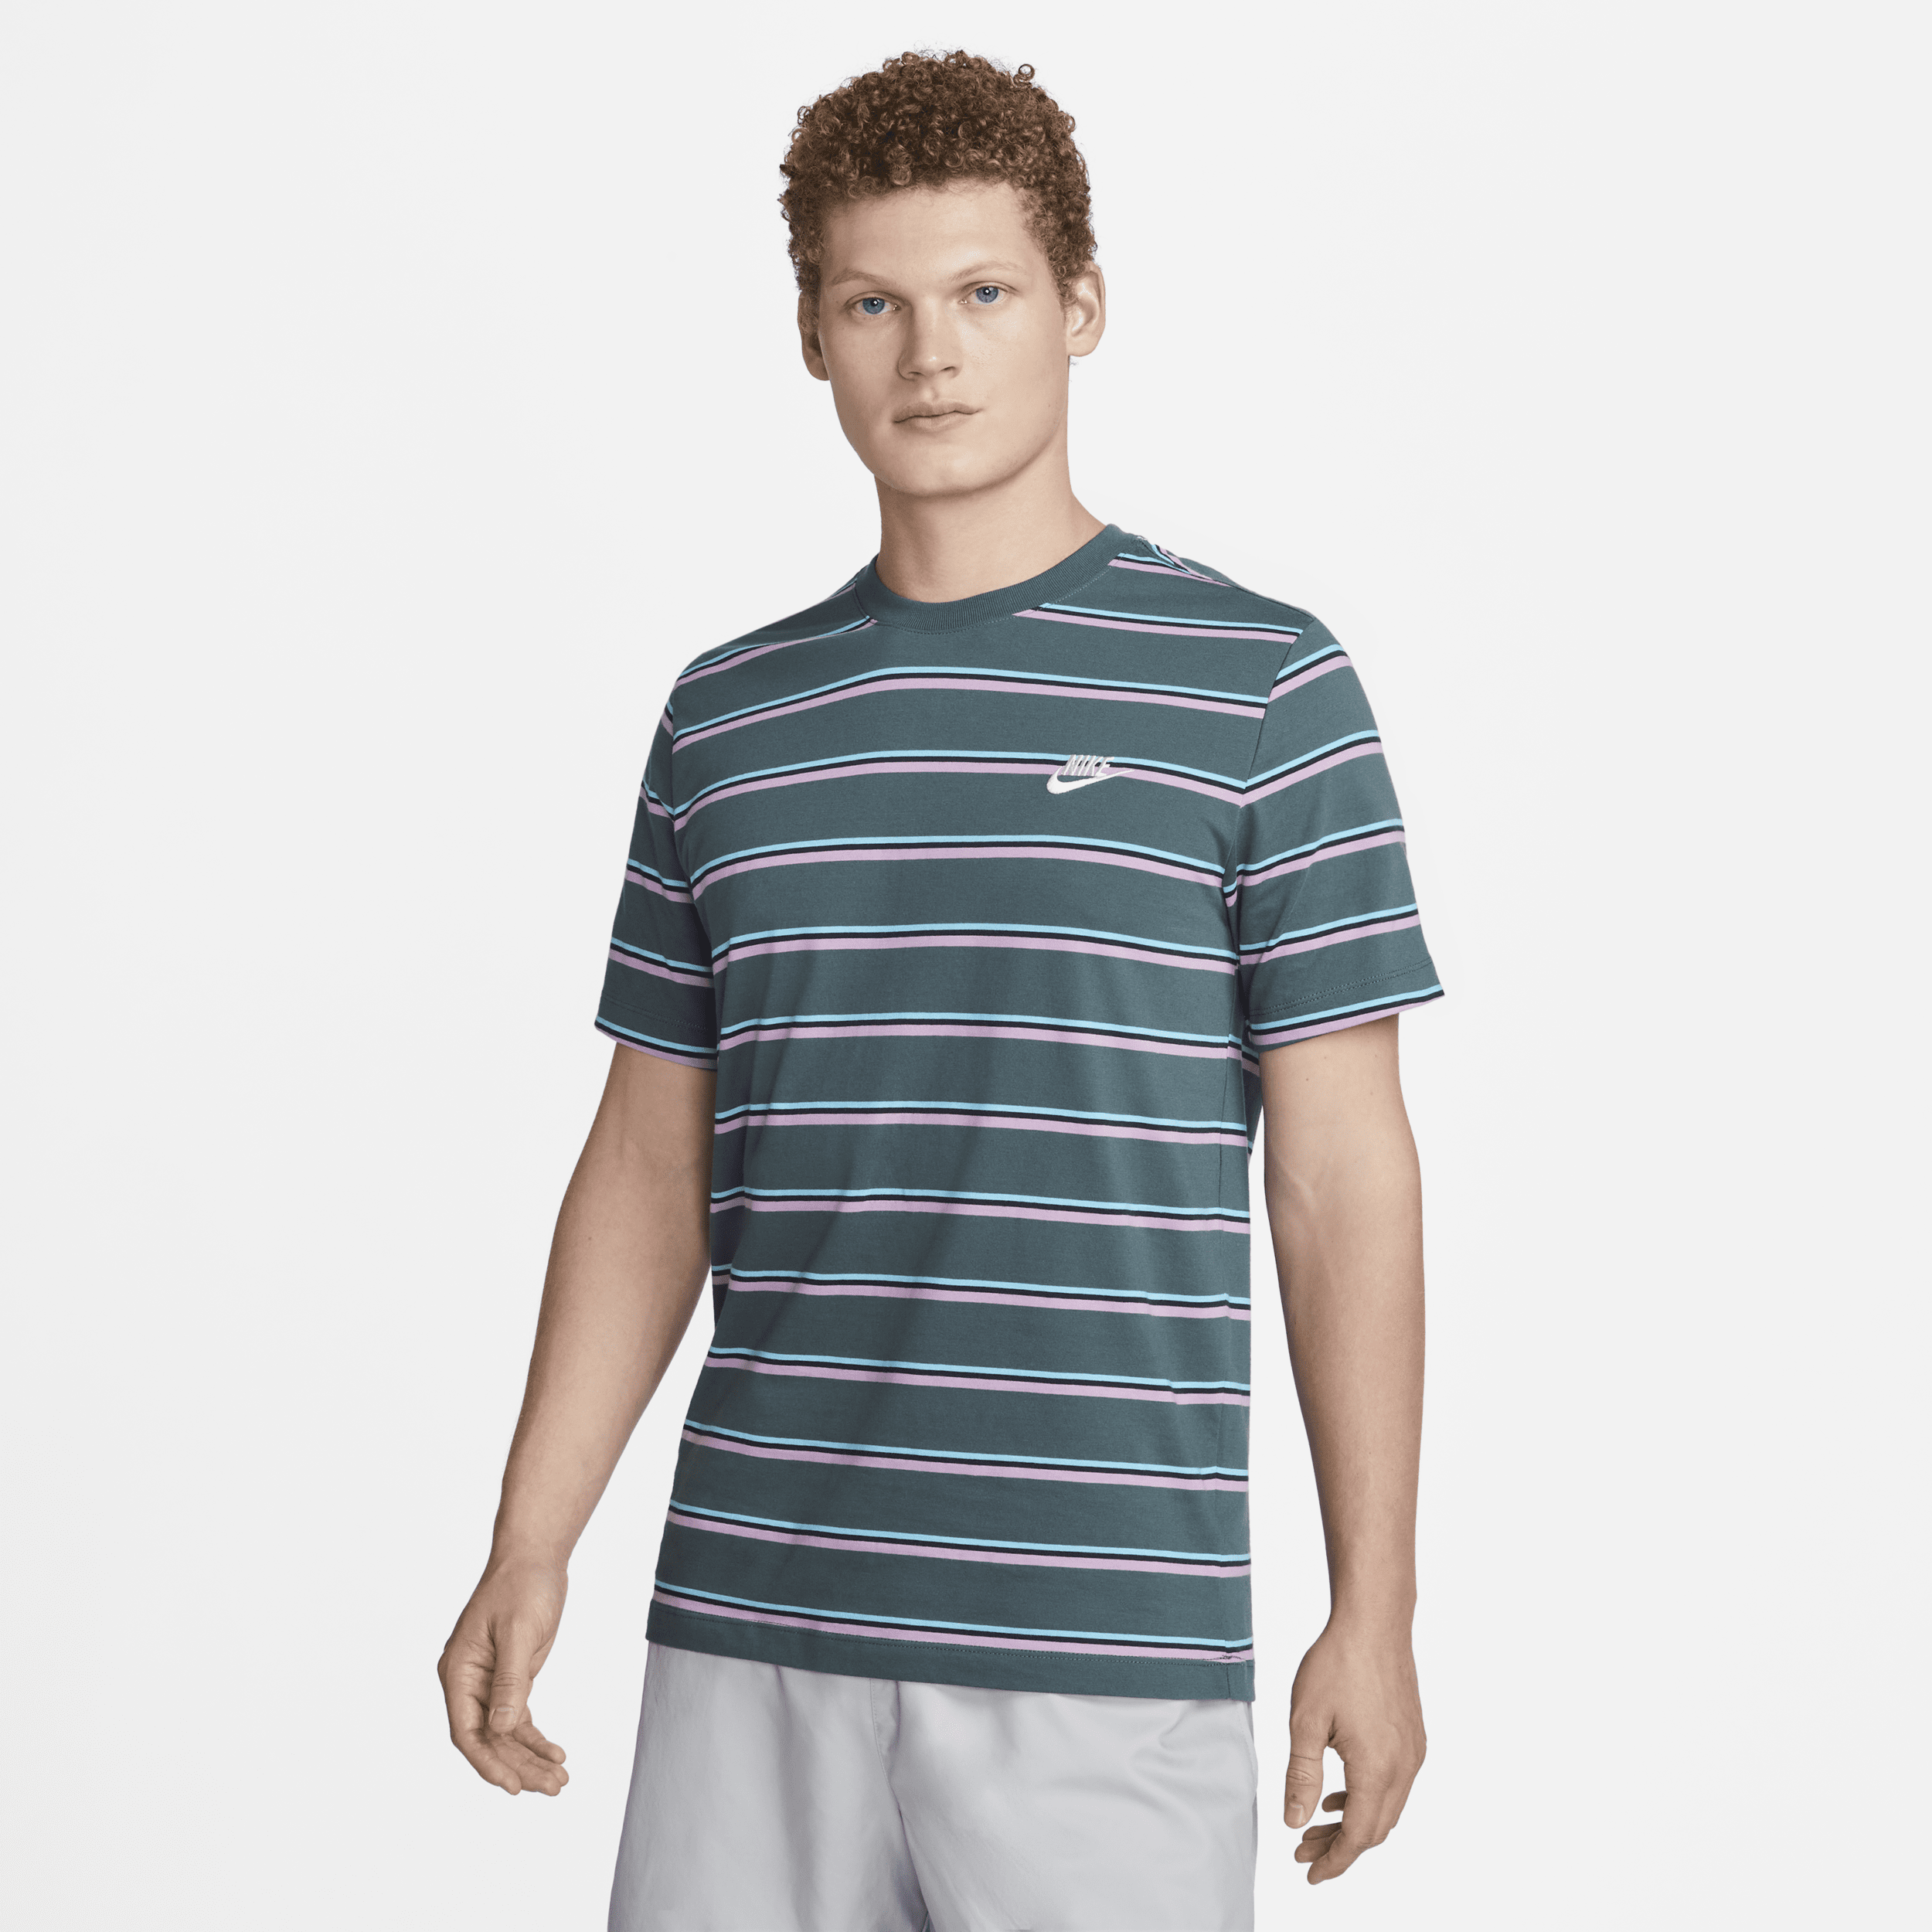 Nike Men's  Sportswear T-shirt In Grey